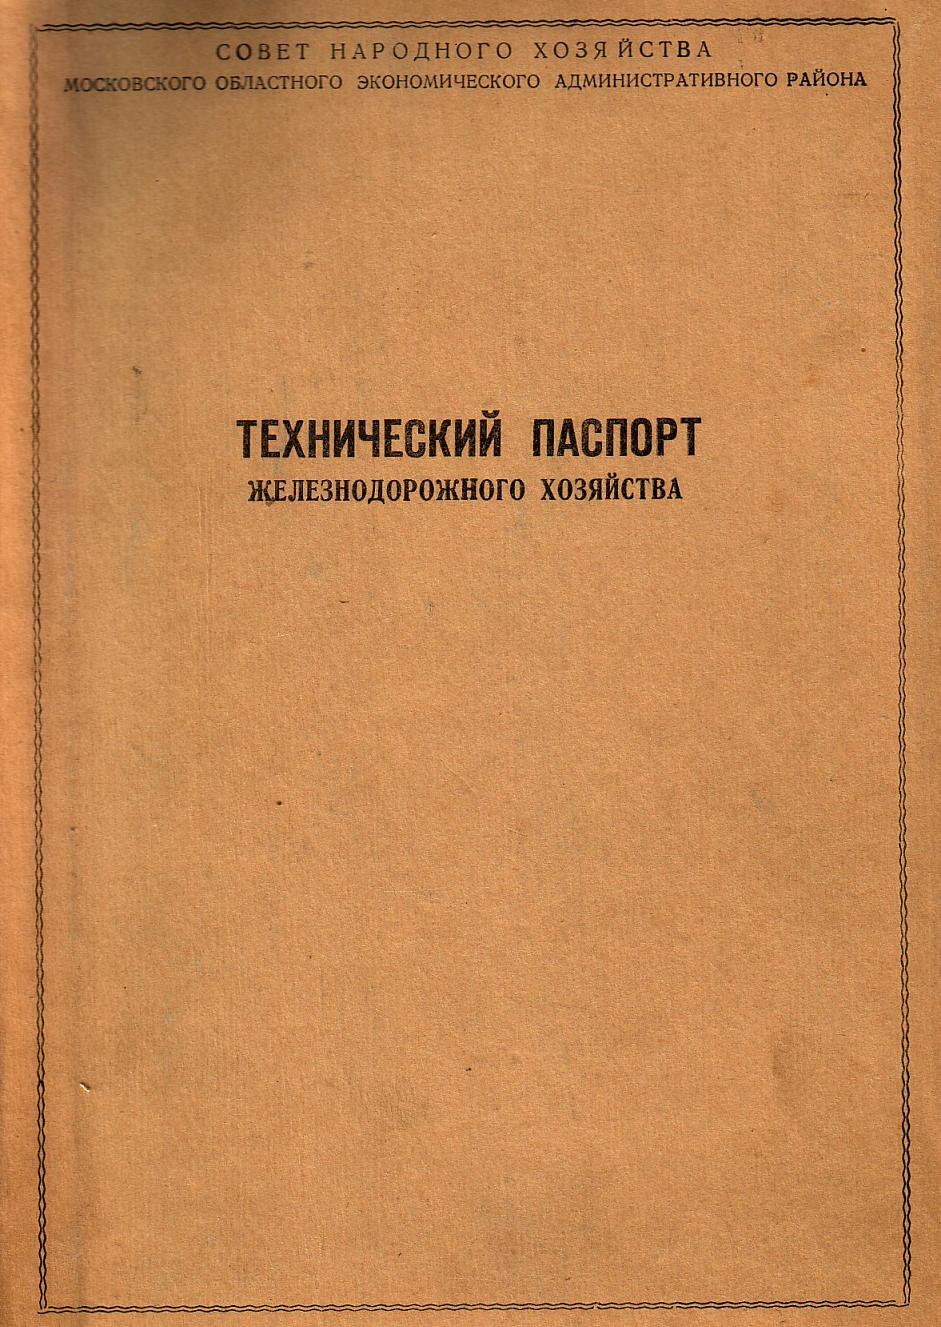 Узкоколейная железная дорога Васильевского предприятия промышленного железнодорожного транспорта - технический паспорт железнодорожного хозяйства (1963 год)